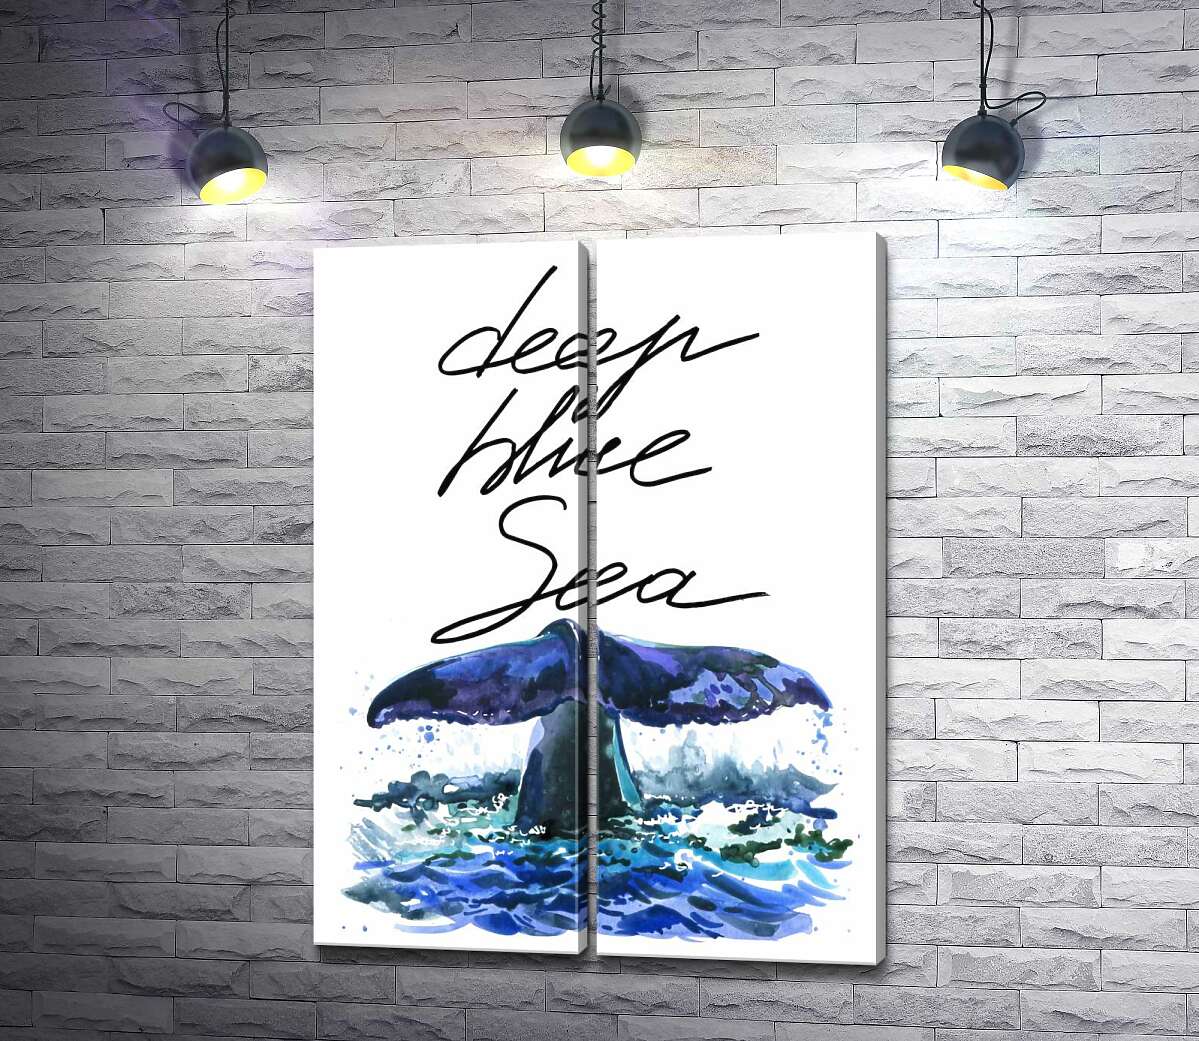 модульная картина Хвост кита над водной поверхностью рядом с надписью "deep blue sea"